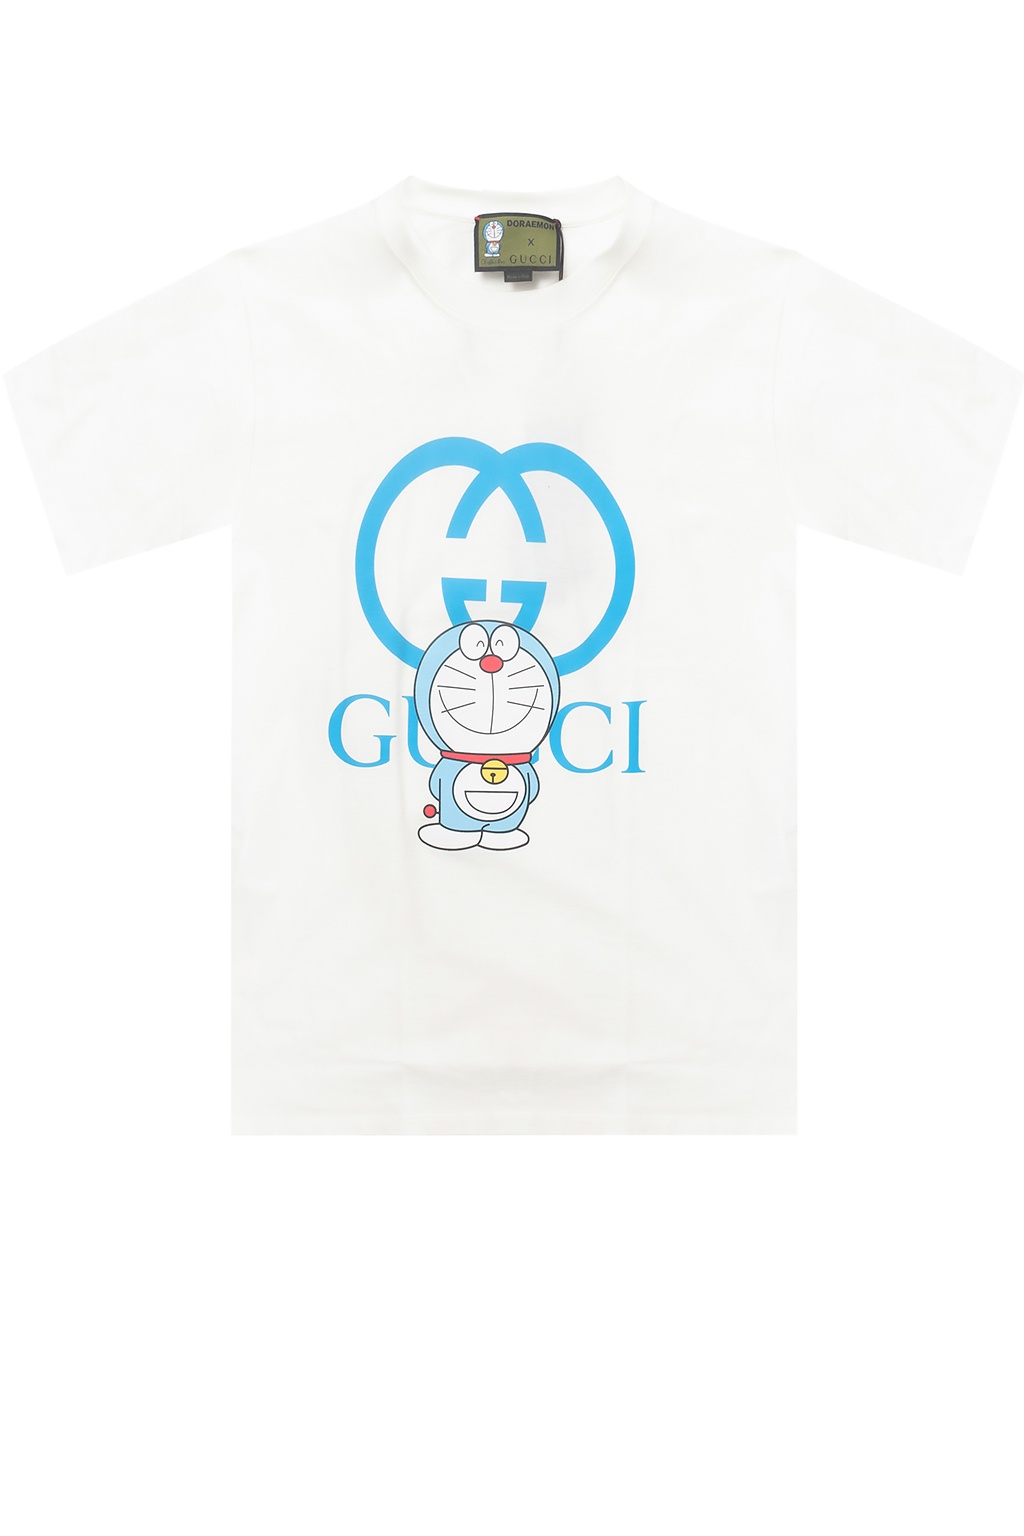 Doraemon X Gucci Gucci Vitkac Singapore